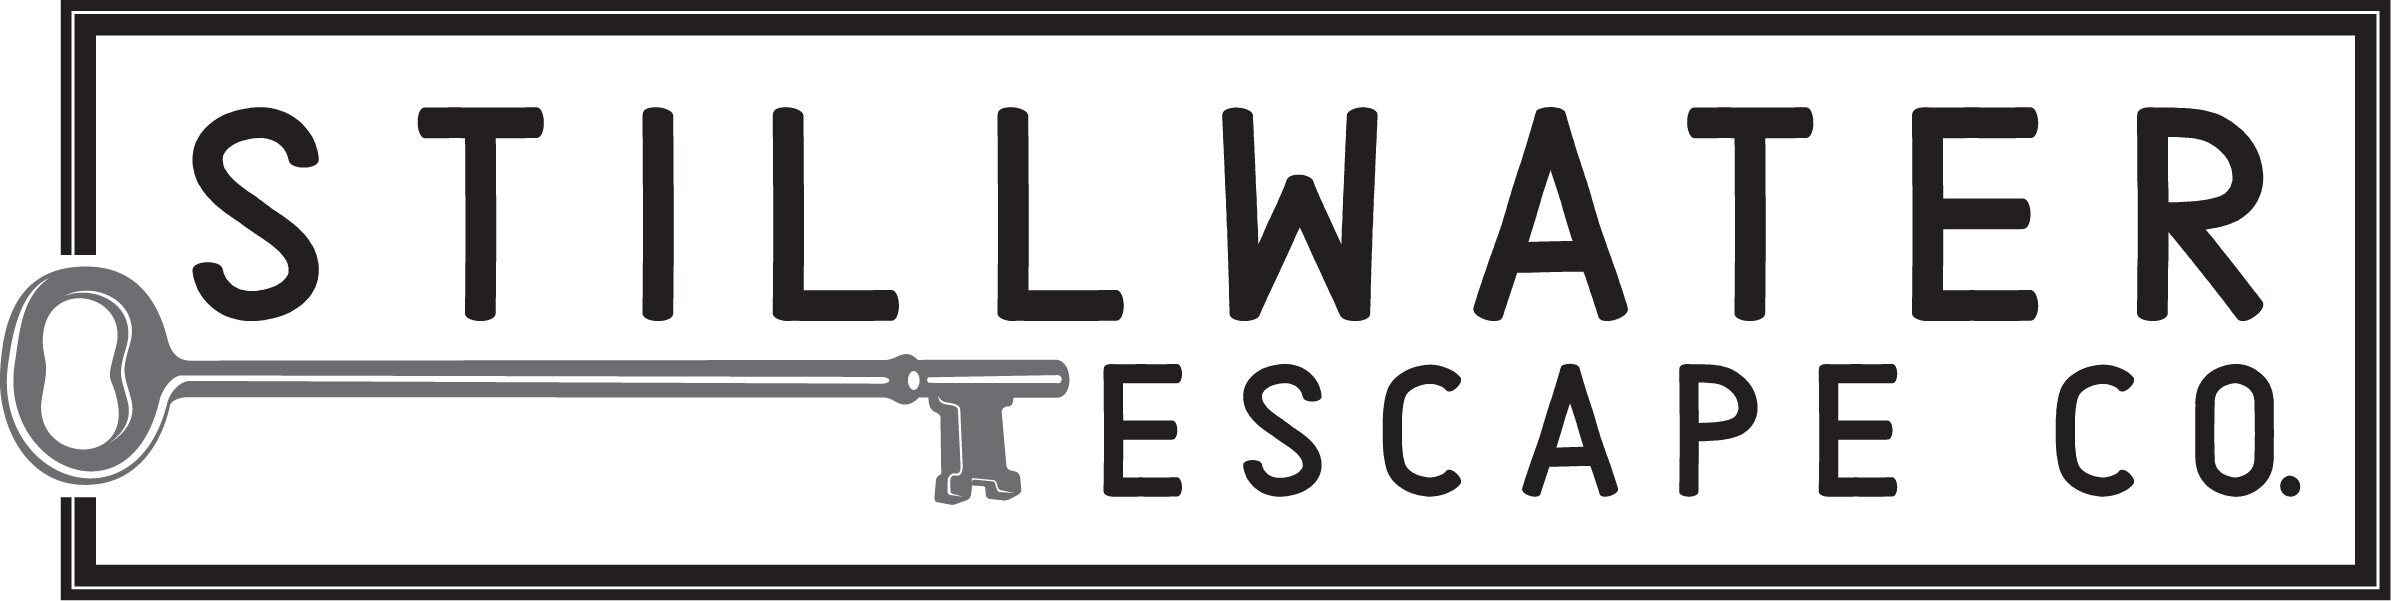 Stillwater Escape Company